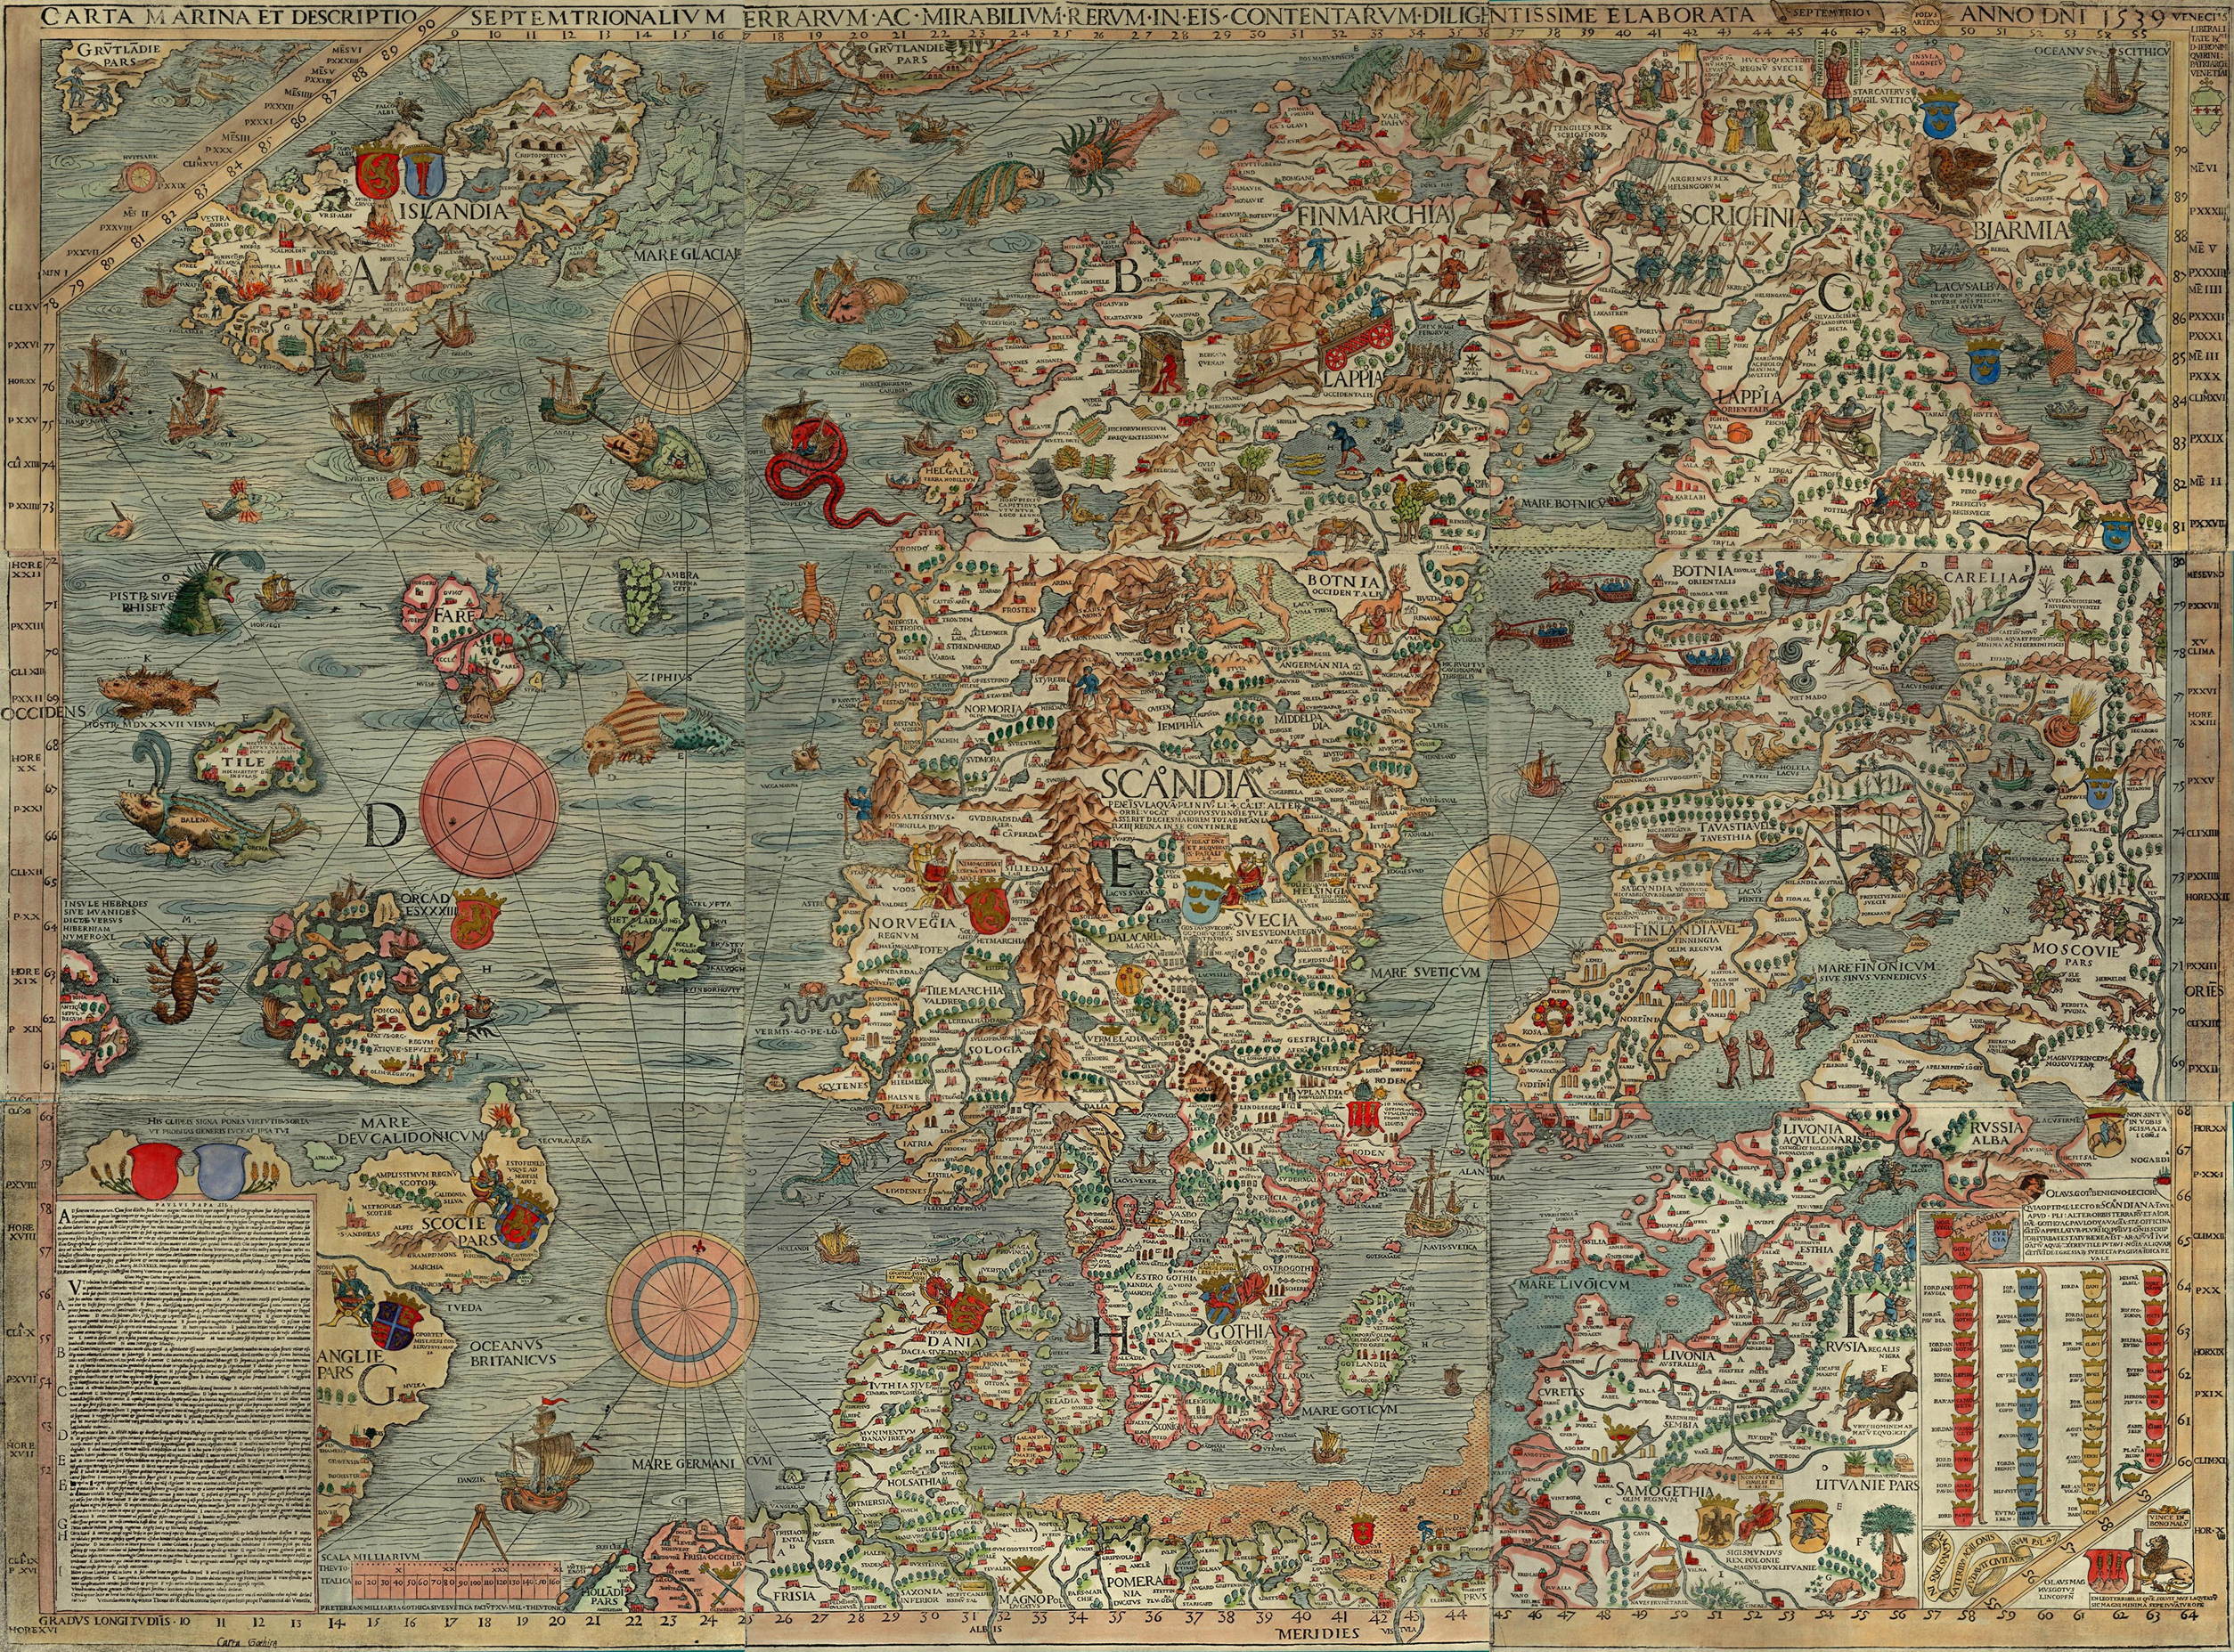 1539. Carta Marina et Descriptio Septentrionalivm